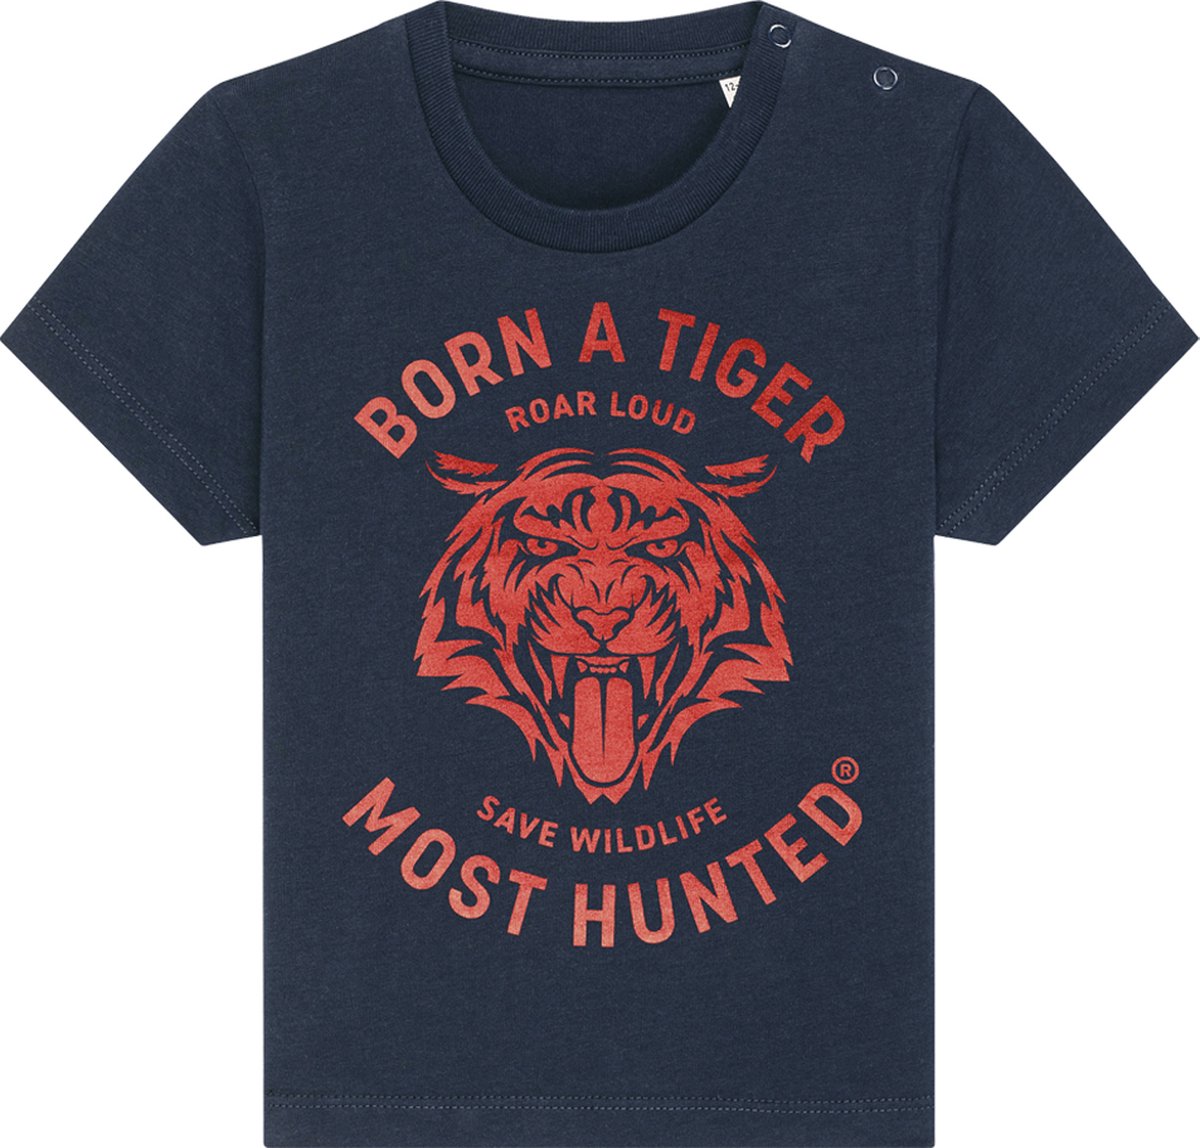 Most Hunted - baby t-shirt - tijger - navy - glanzend rood - maat 6-12 maanden